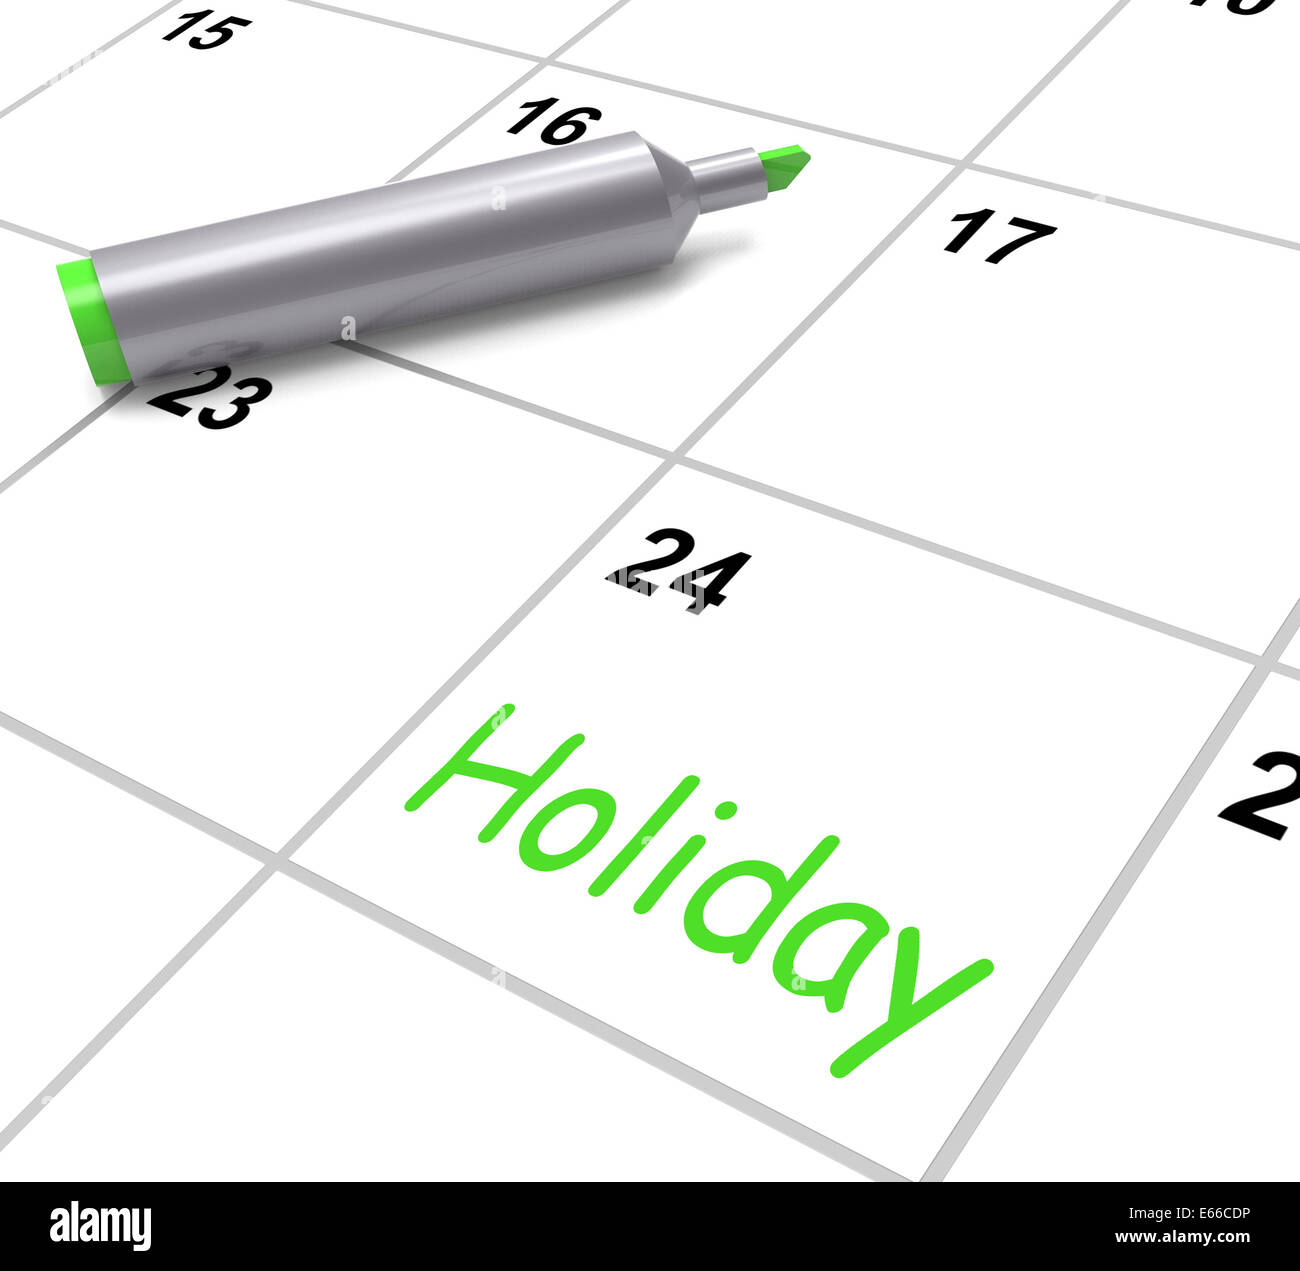 Calendrier des fêtes montrant journée de repos et de pause du travail Banque D'Images